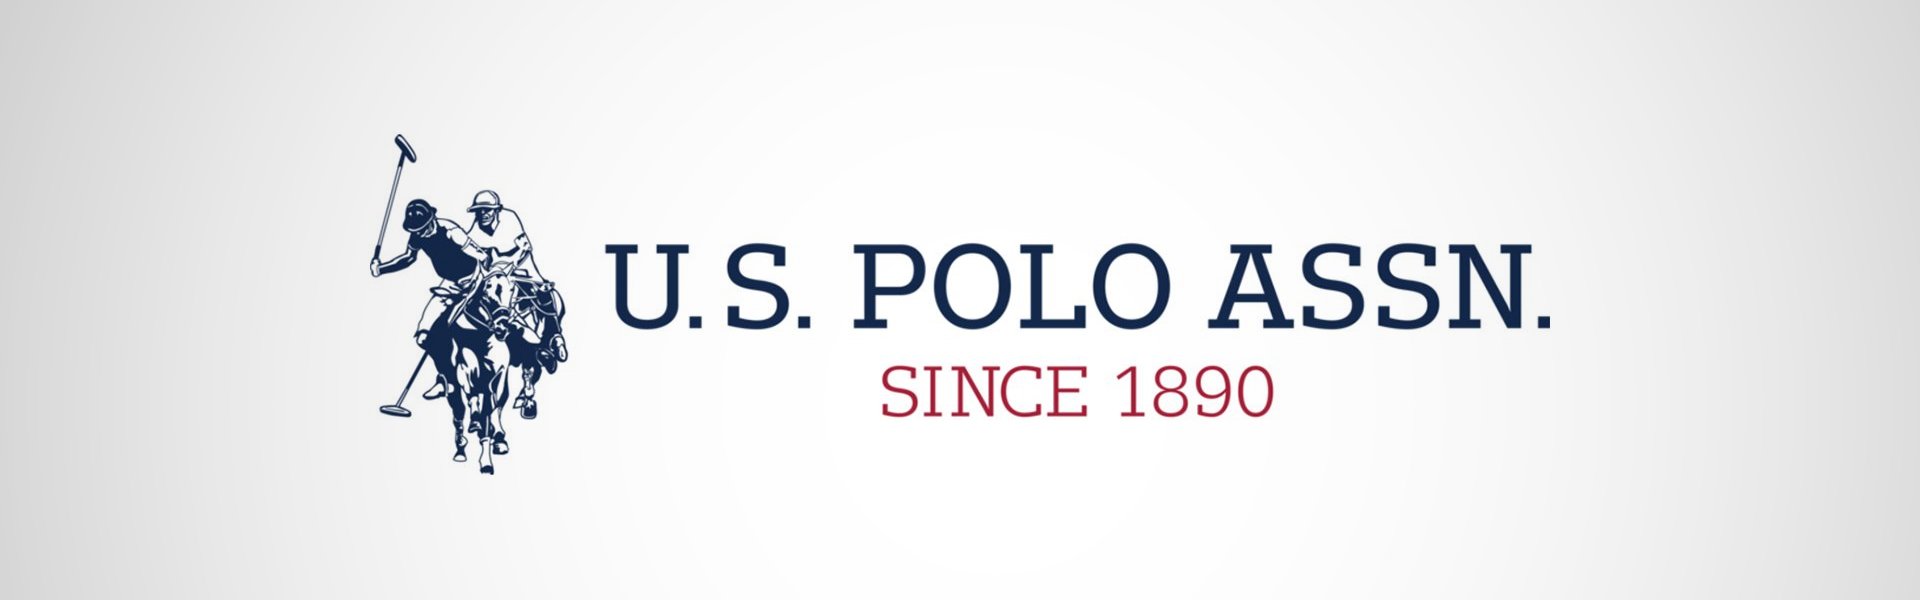 U.S. Polo miesten kengät Tabry, vaaleanruskea-sininen U. S. Polo Assn.